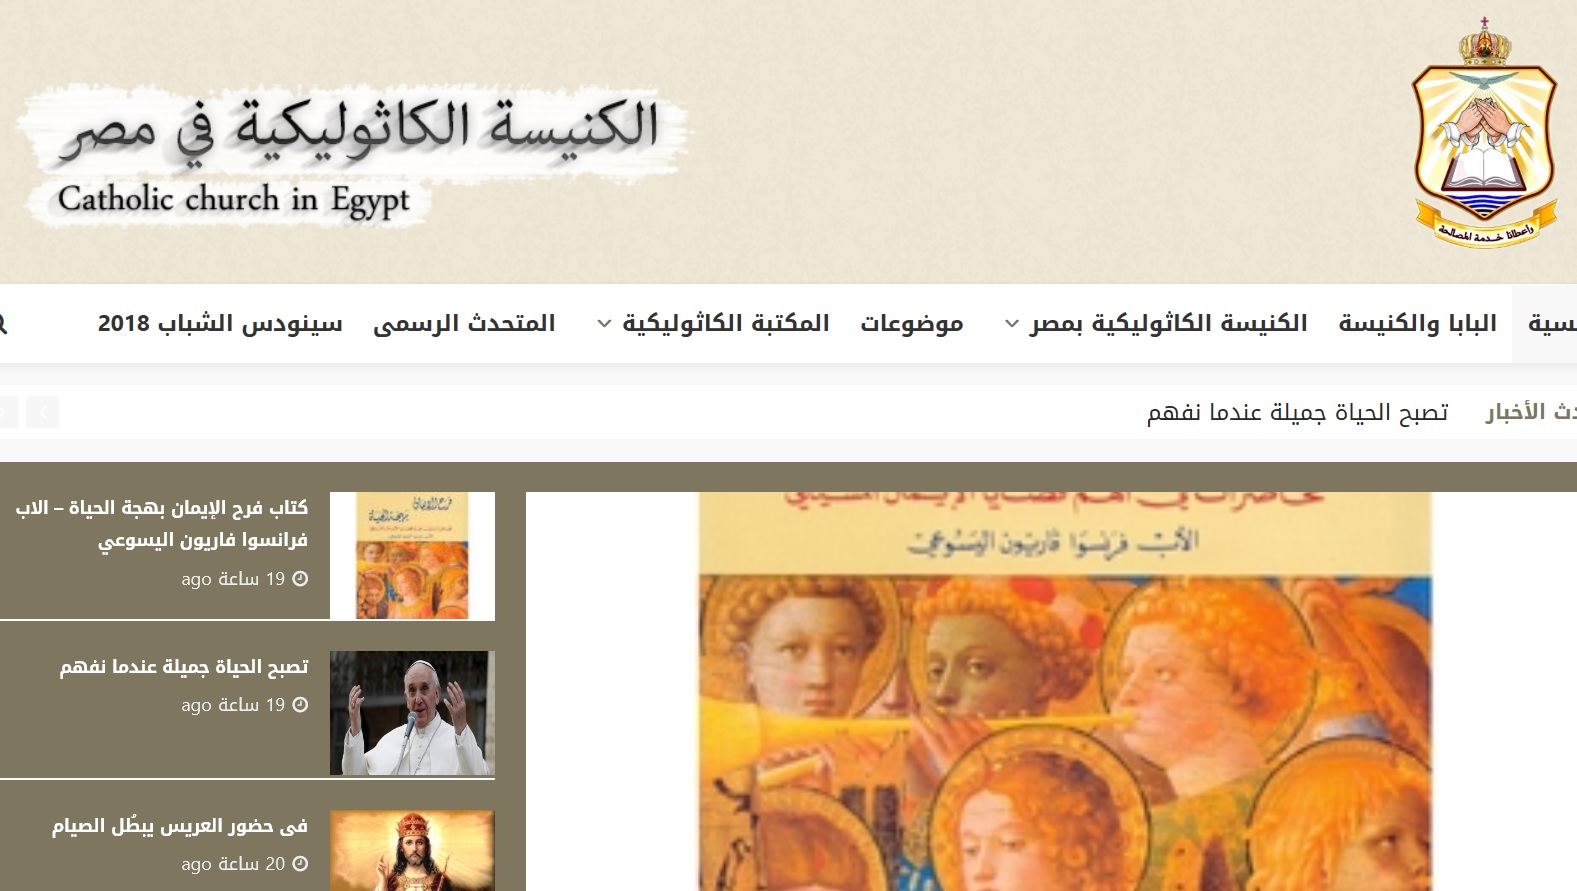 الموقع الإلكتروني للكنيسة الكاثوليكية بمصر